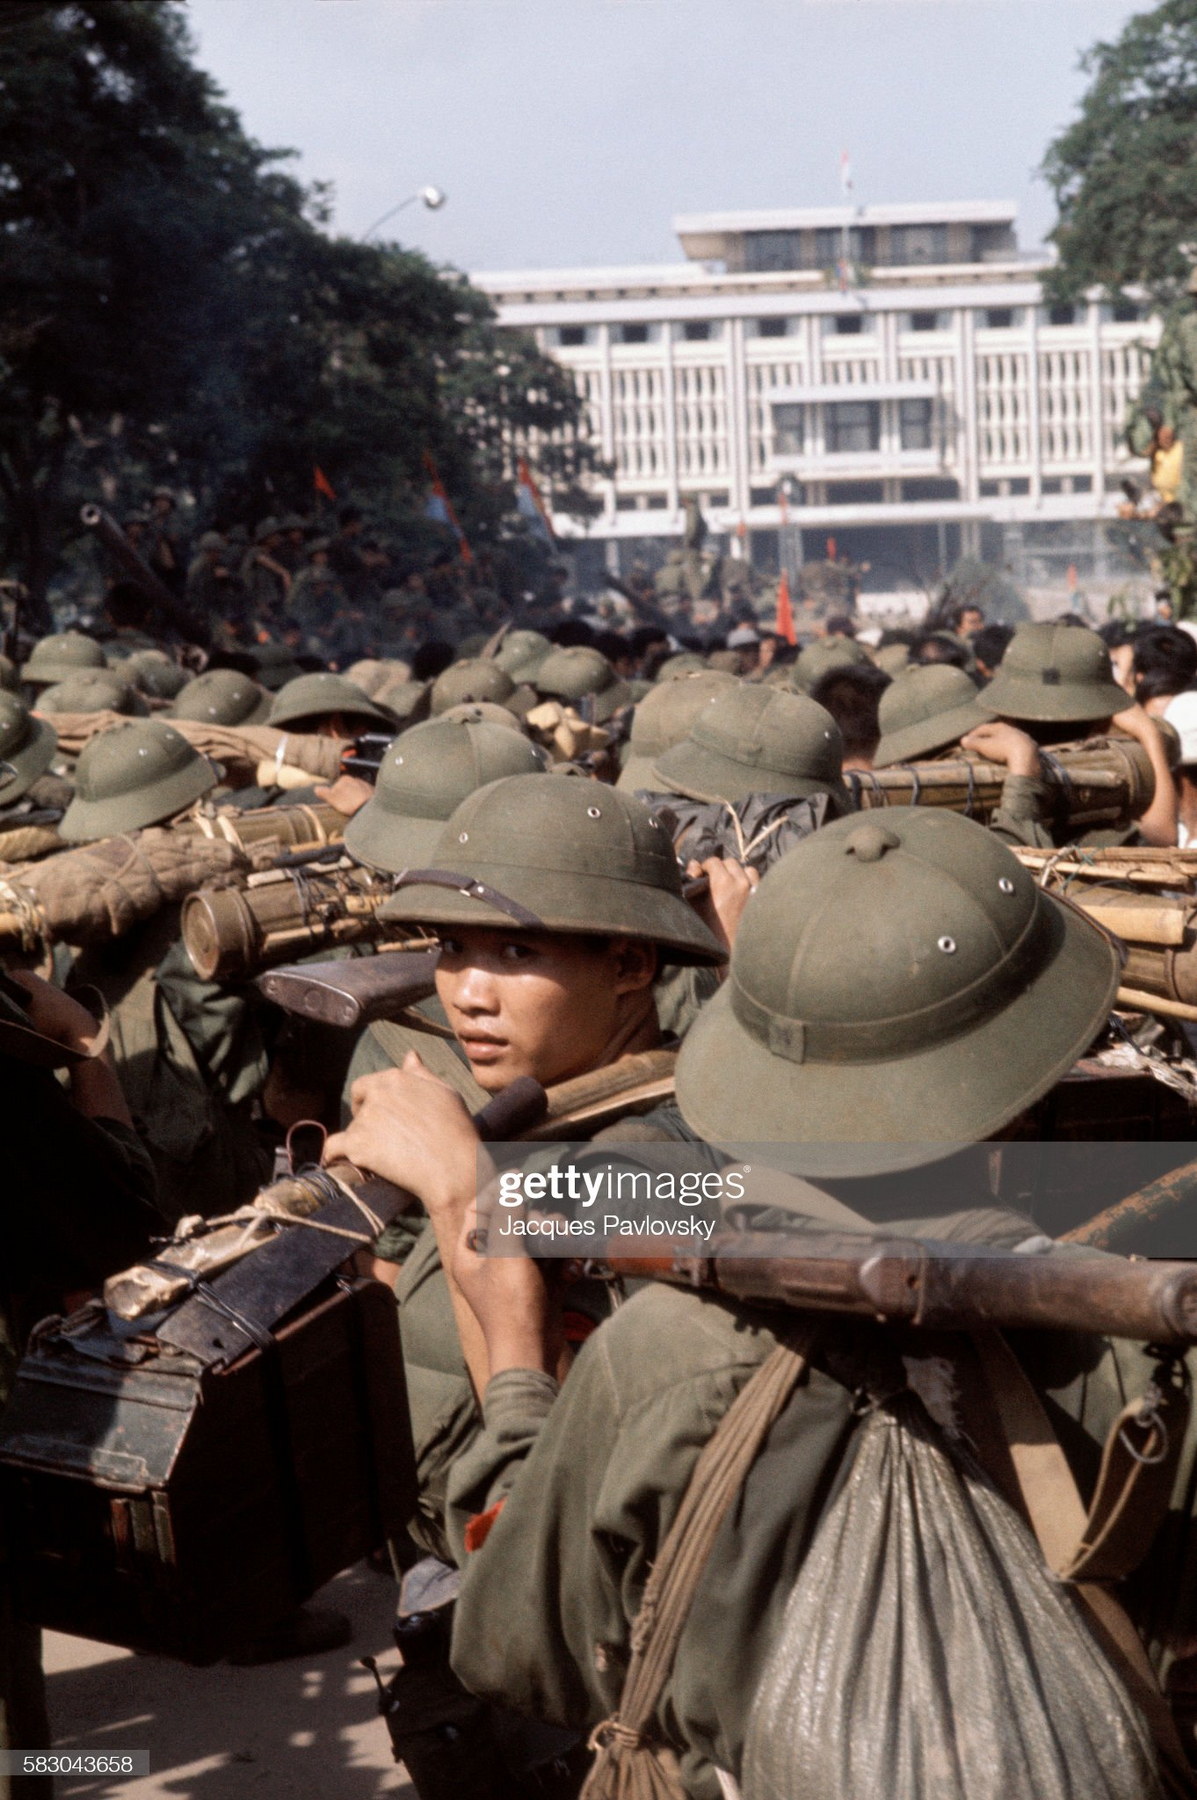 Khoảnh khắc Sài Gòn 30/4/1975 qua ống kính của Nhiếp ảnh gia Jacques Pavlovsky Saigon-30-4-1975-Jacques-Pavlovsky-10